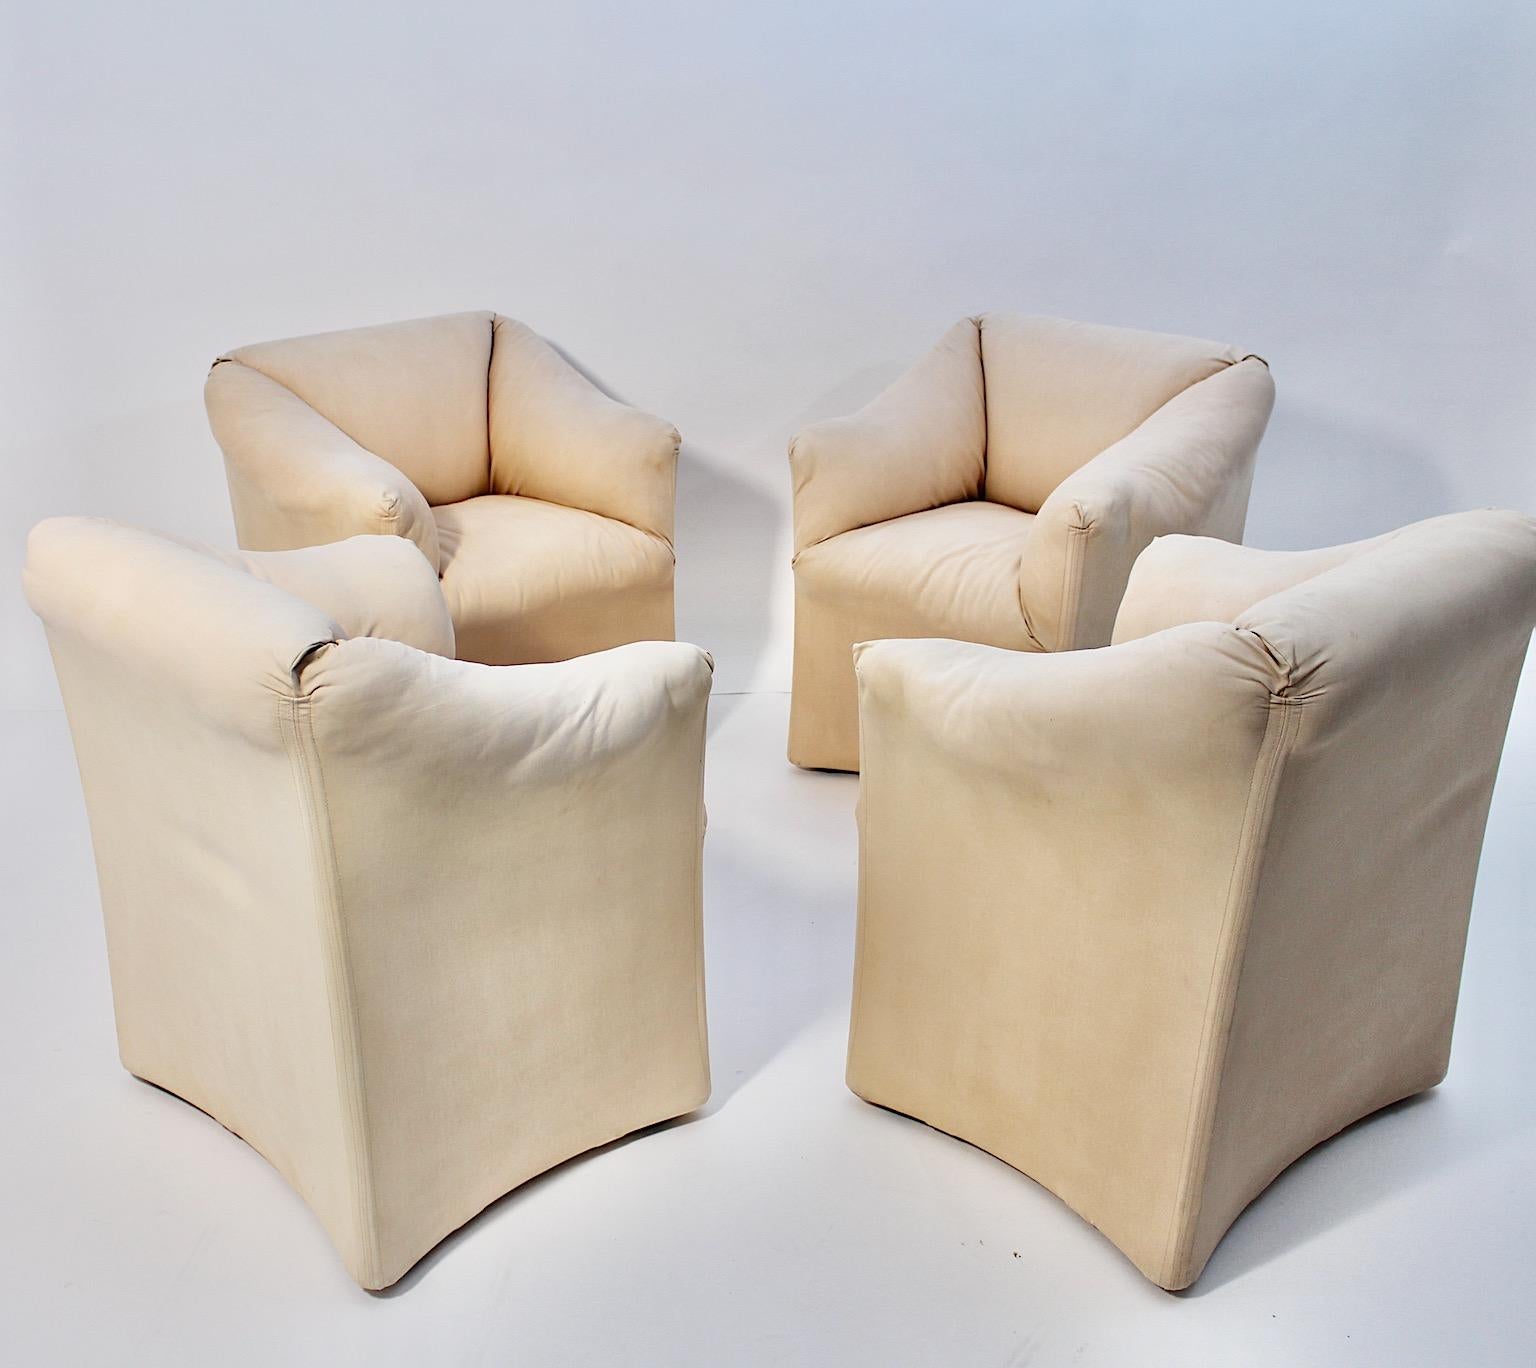 Moderne Vintage vier ( 4 ) Esszimmerstühle oder Sessel von Mario Bellini für Cassina 1970er Jahre Italien.
Eine erstaunliche Reihe von vier Esszimmerstühle oder Sessel Modell Tentazione entworfen von Mario Bellini für Cassina 1970er Jahren.
Diese